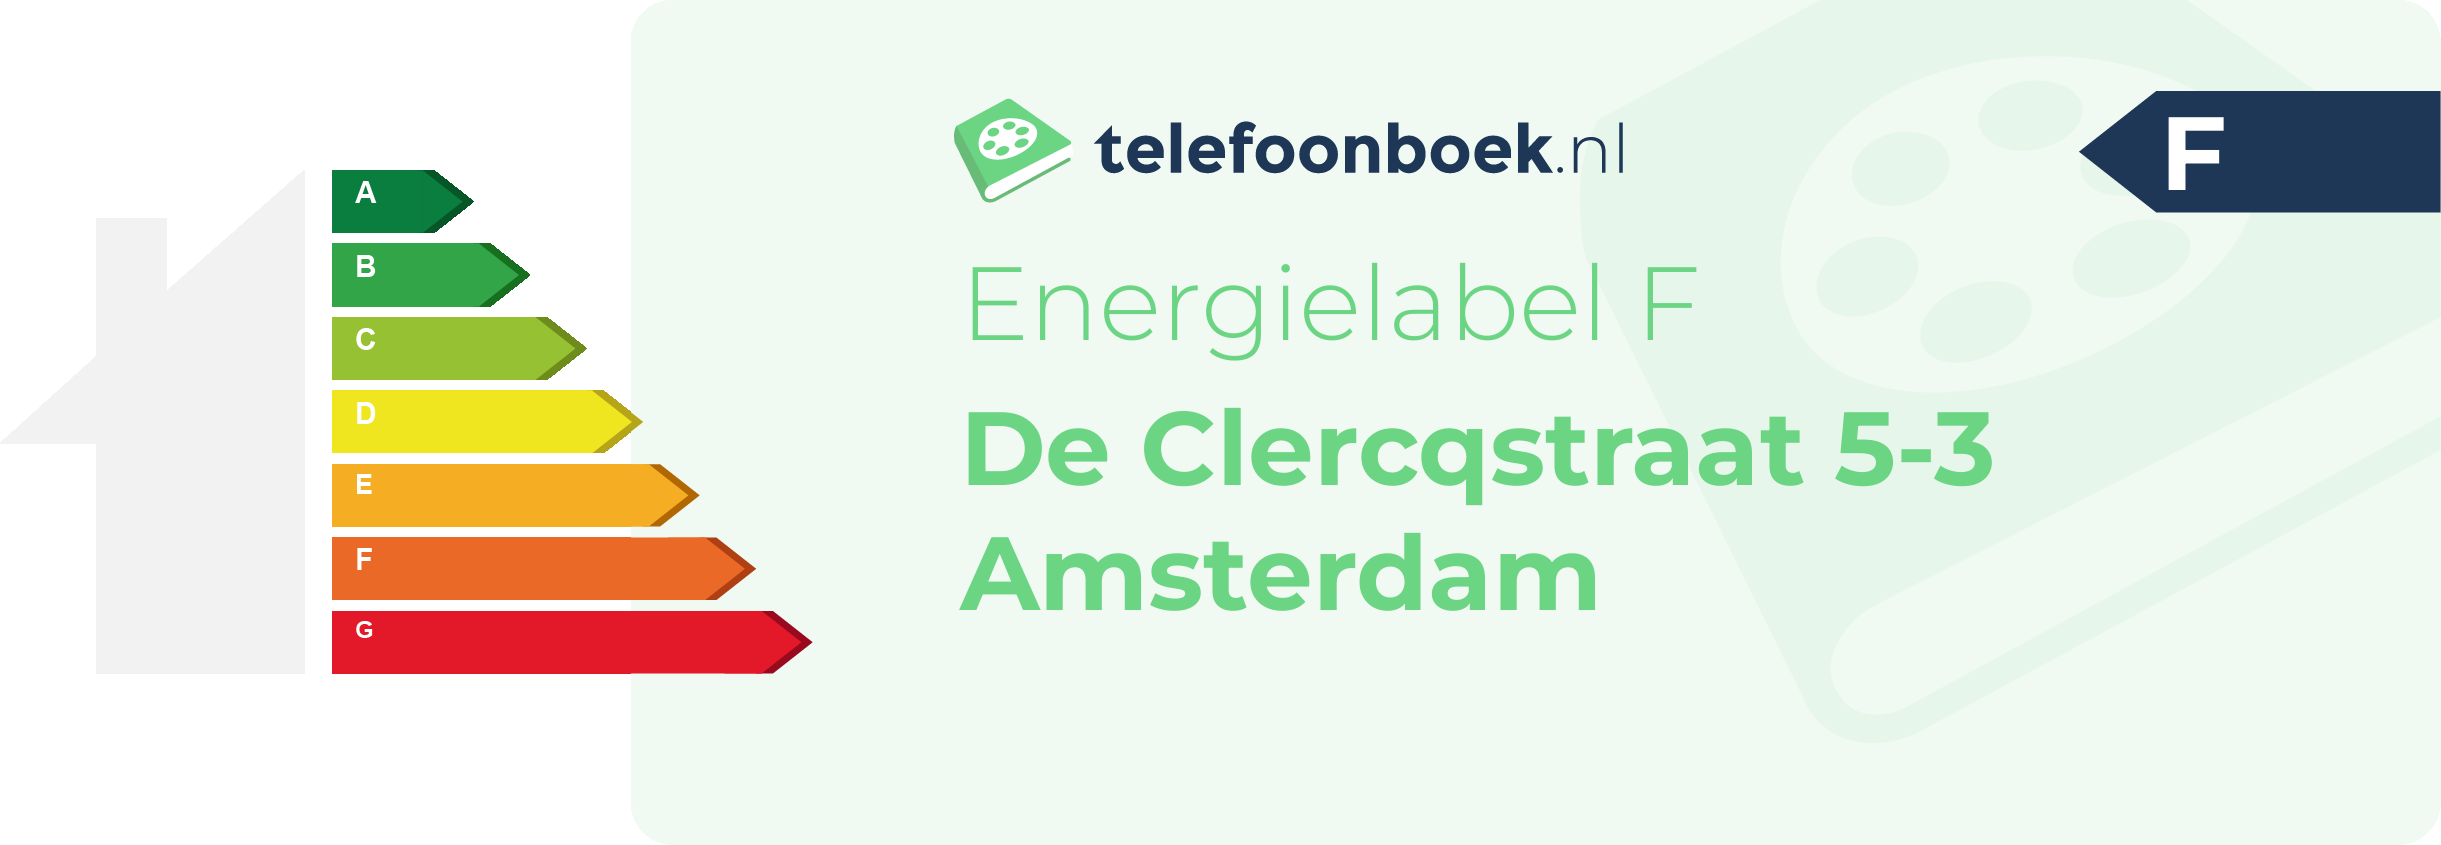 Energielabel De Clercqstraat 5-3 Amsterdam